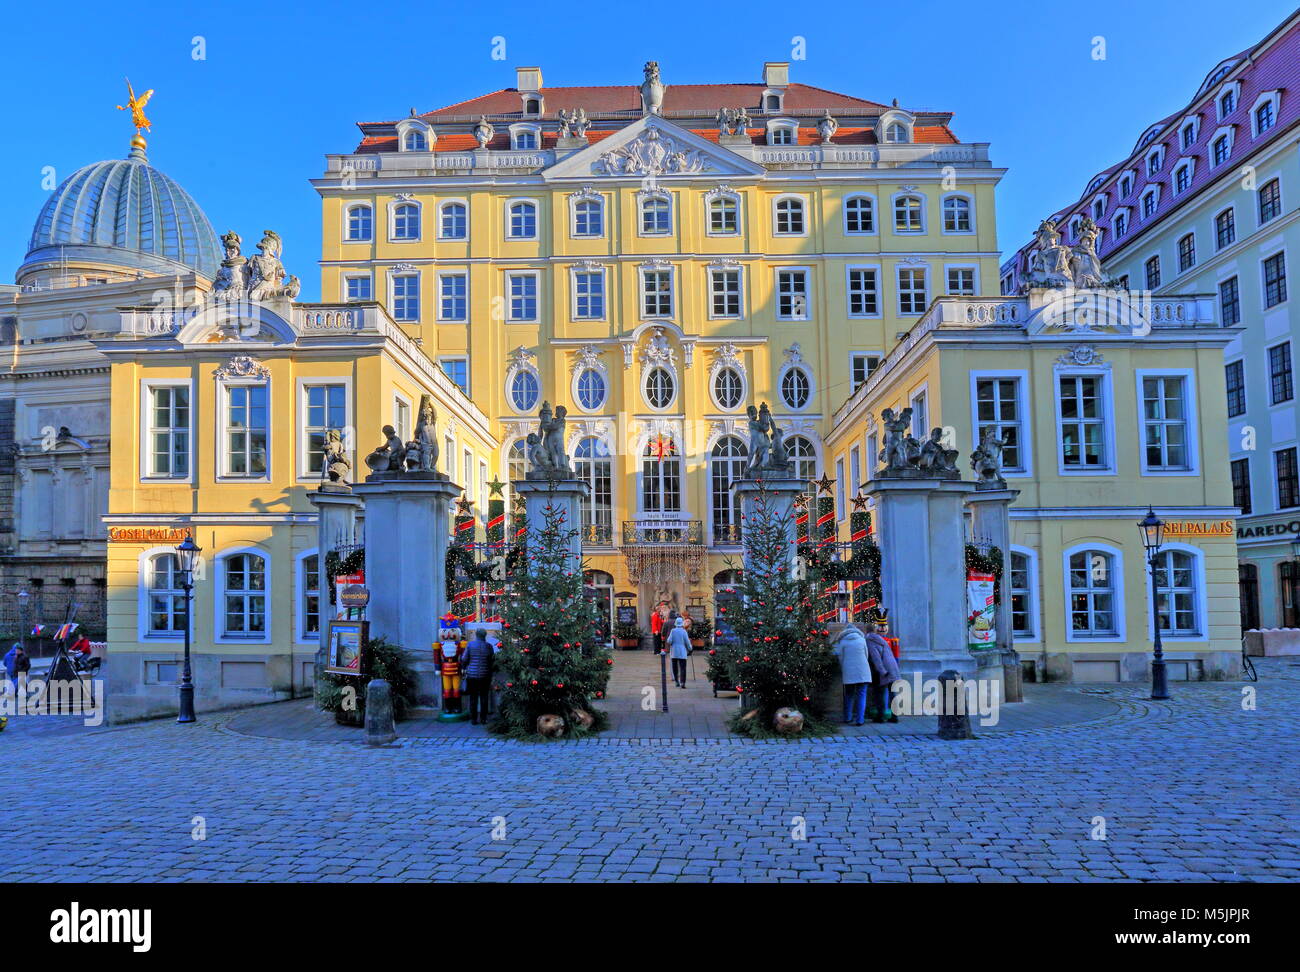 Cosel Palais on the Neumarkt,Christmas season,Dresden,Saxony,Germany Stock Photo